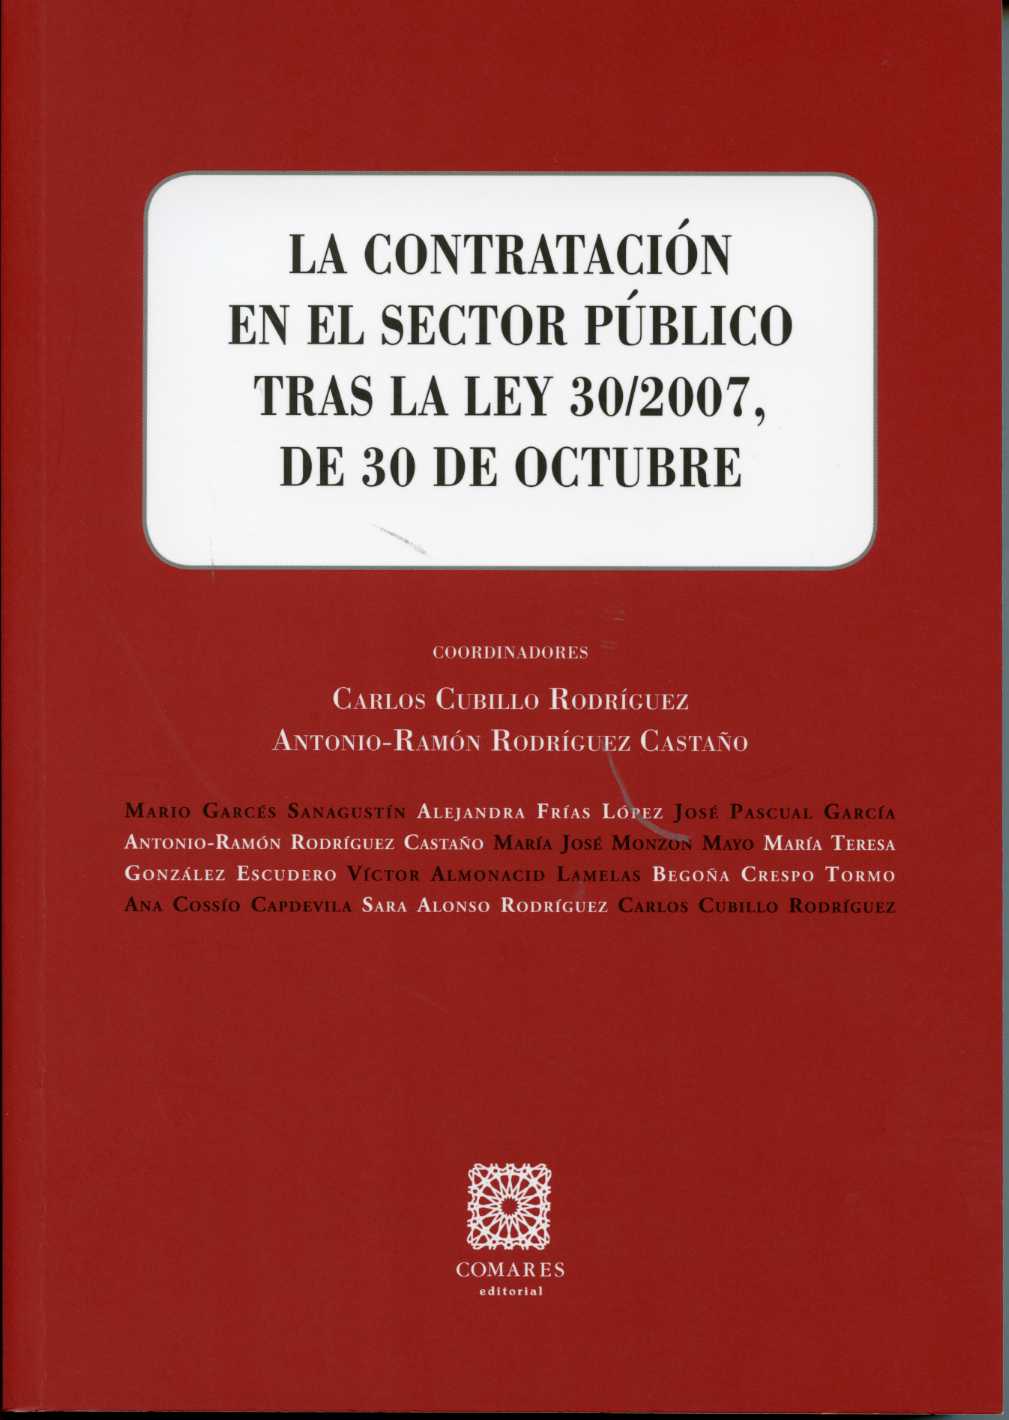 La contratacion en el sector publico tras la ley 30/2007, de 30 de octubre